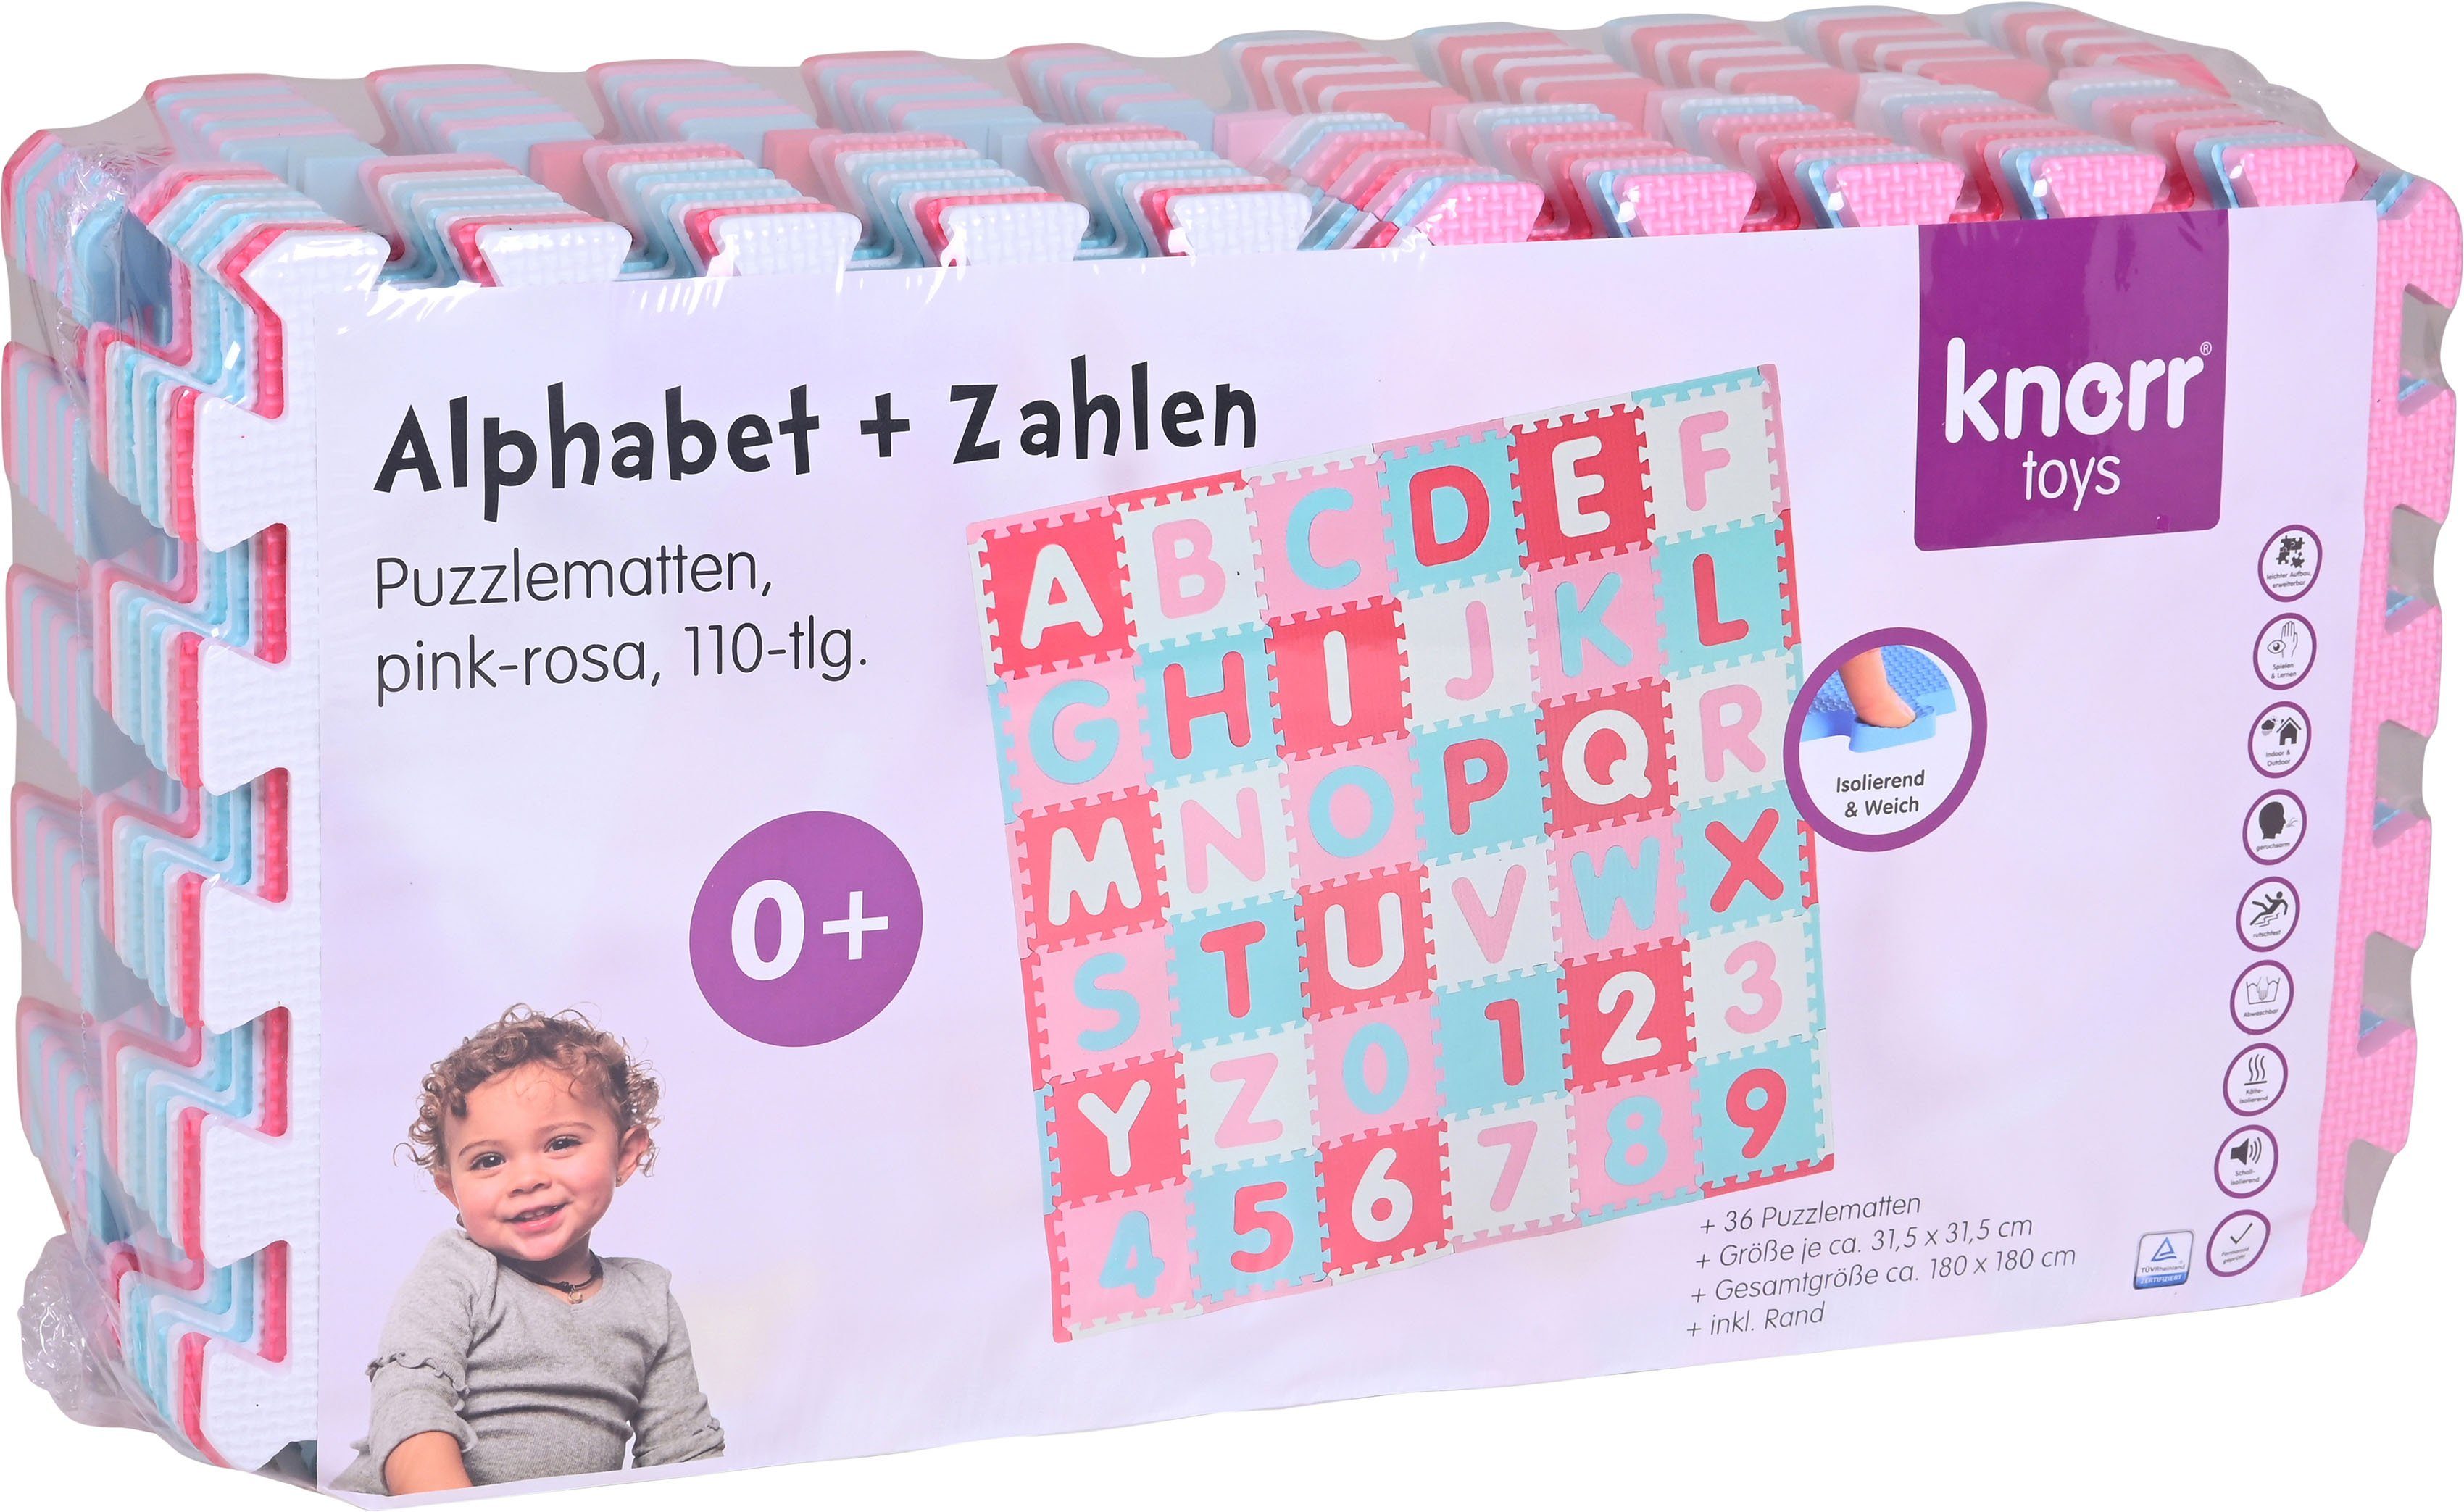 Knorrtoys® Puzzle + Bodenpuzzle Puzzlematte, Zahlen, Alphabet Pink-rosa, Puzzleteile